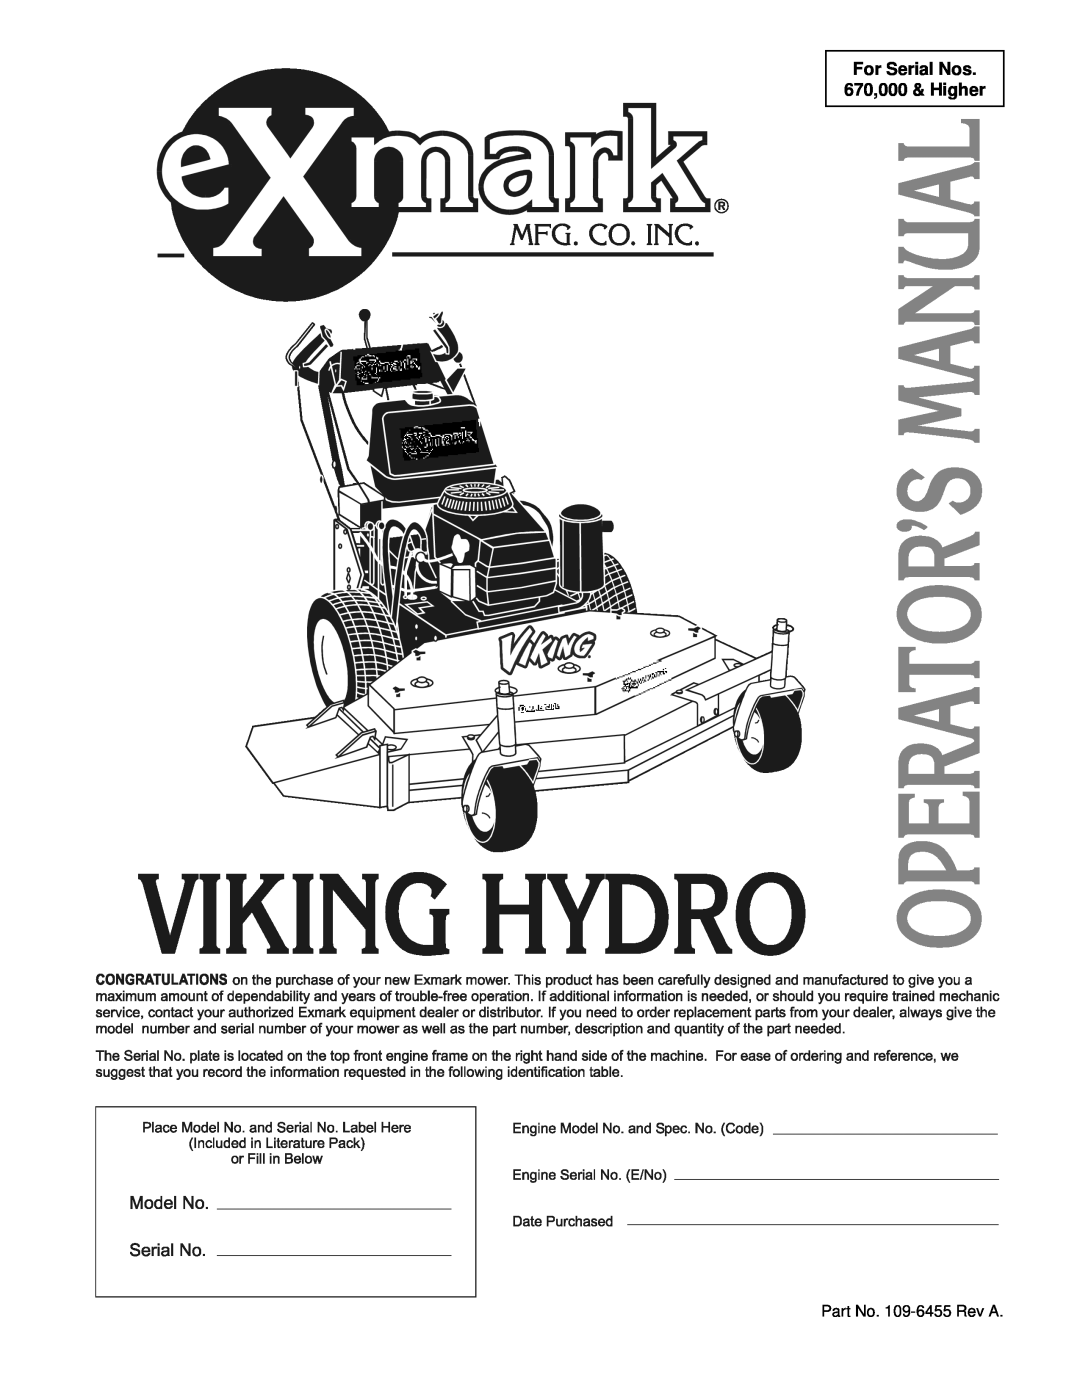 Exmark VH15KA362, VH15KA483 manual For Serial Nos 670,000 & Higher, Part No. 109-6455 Rev A 